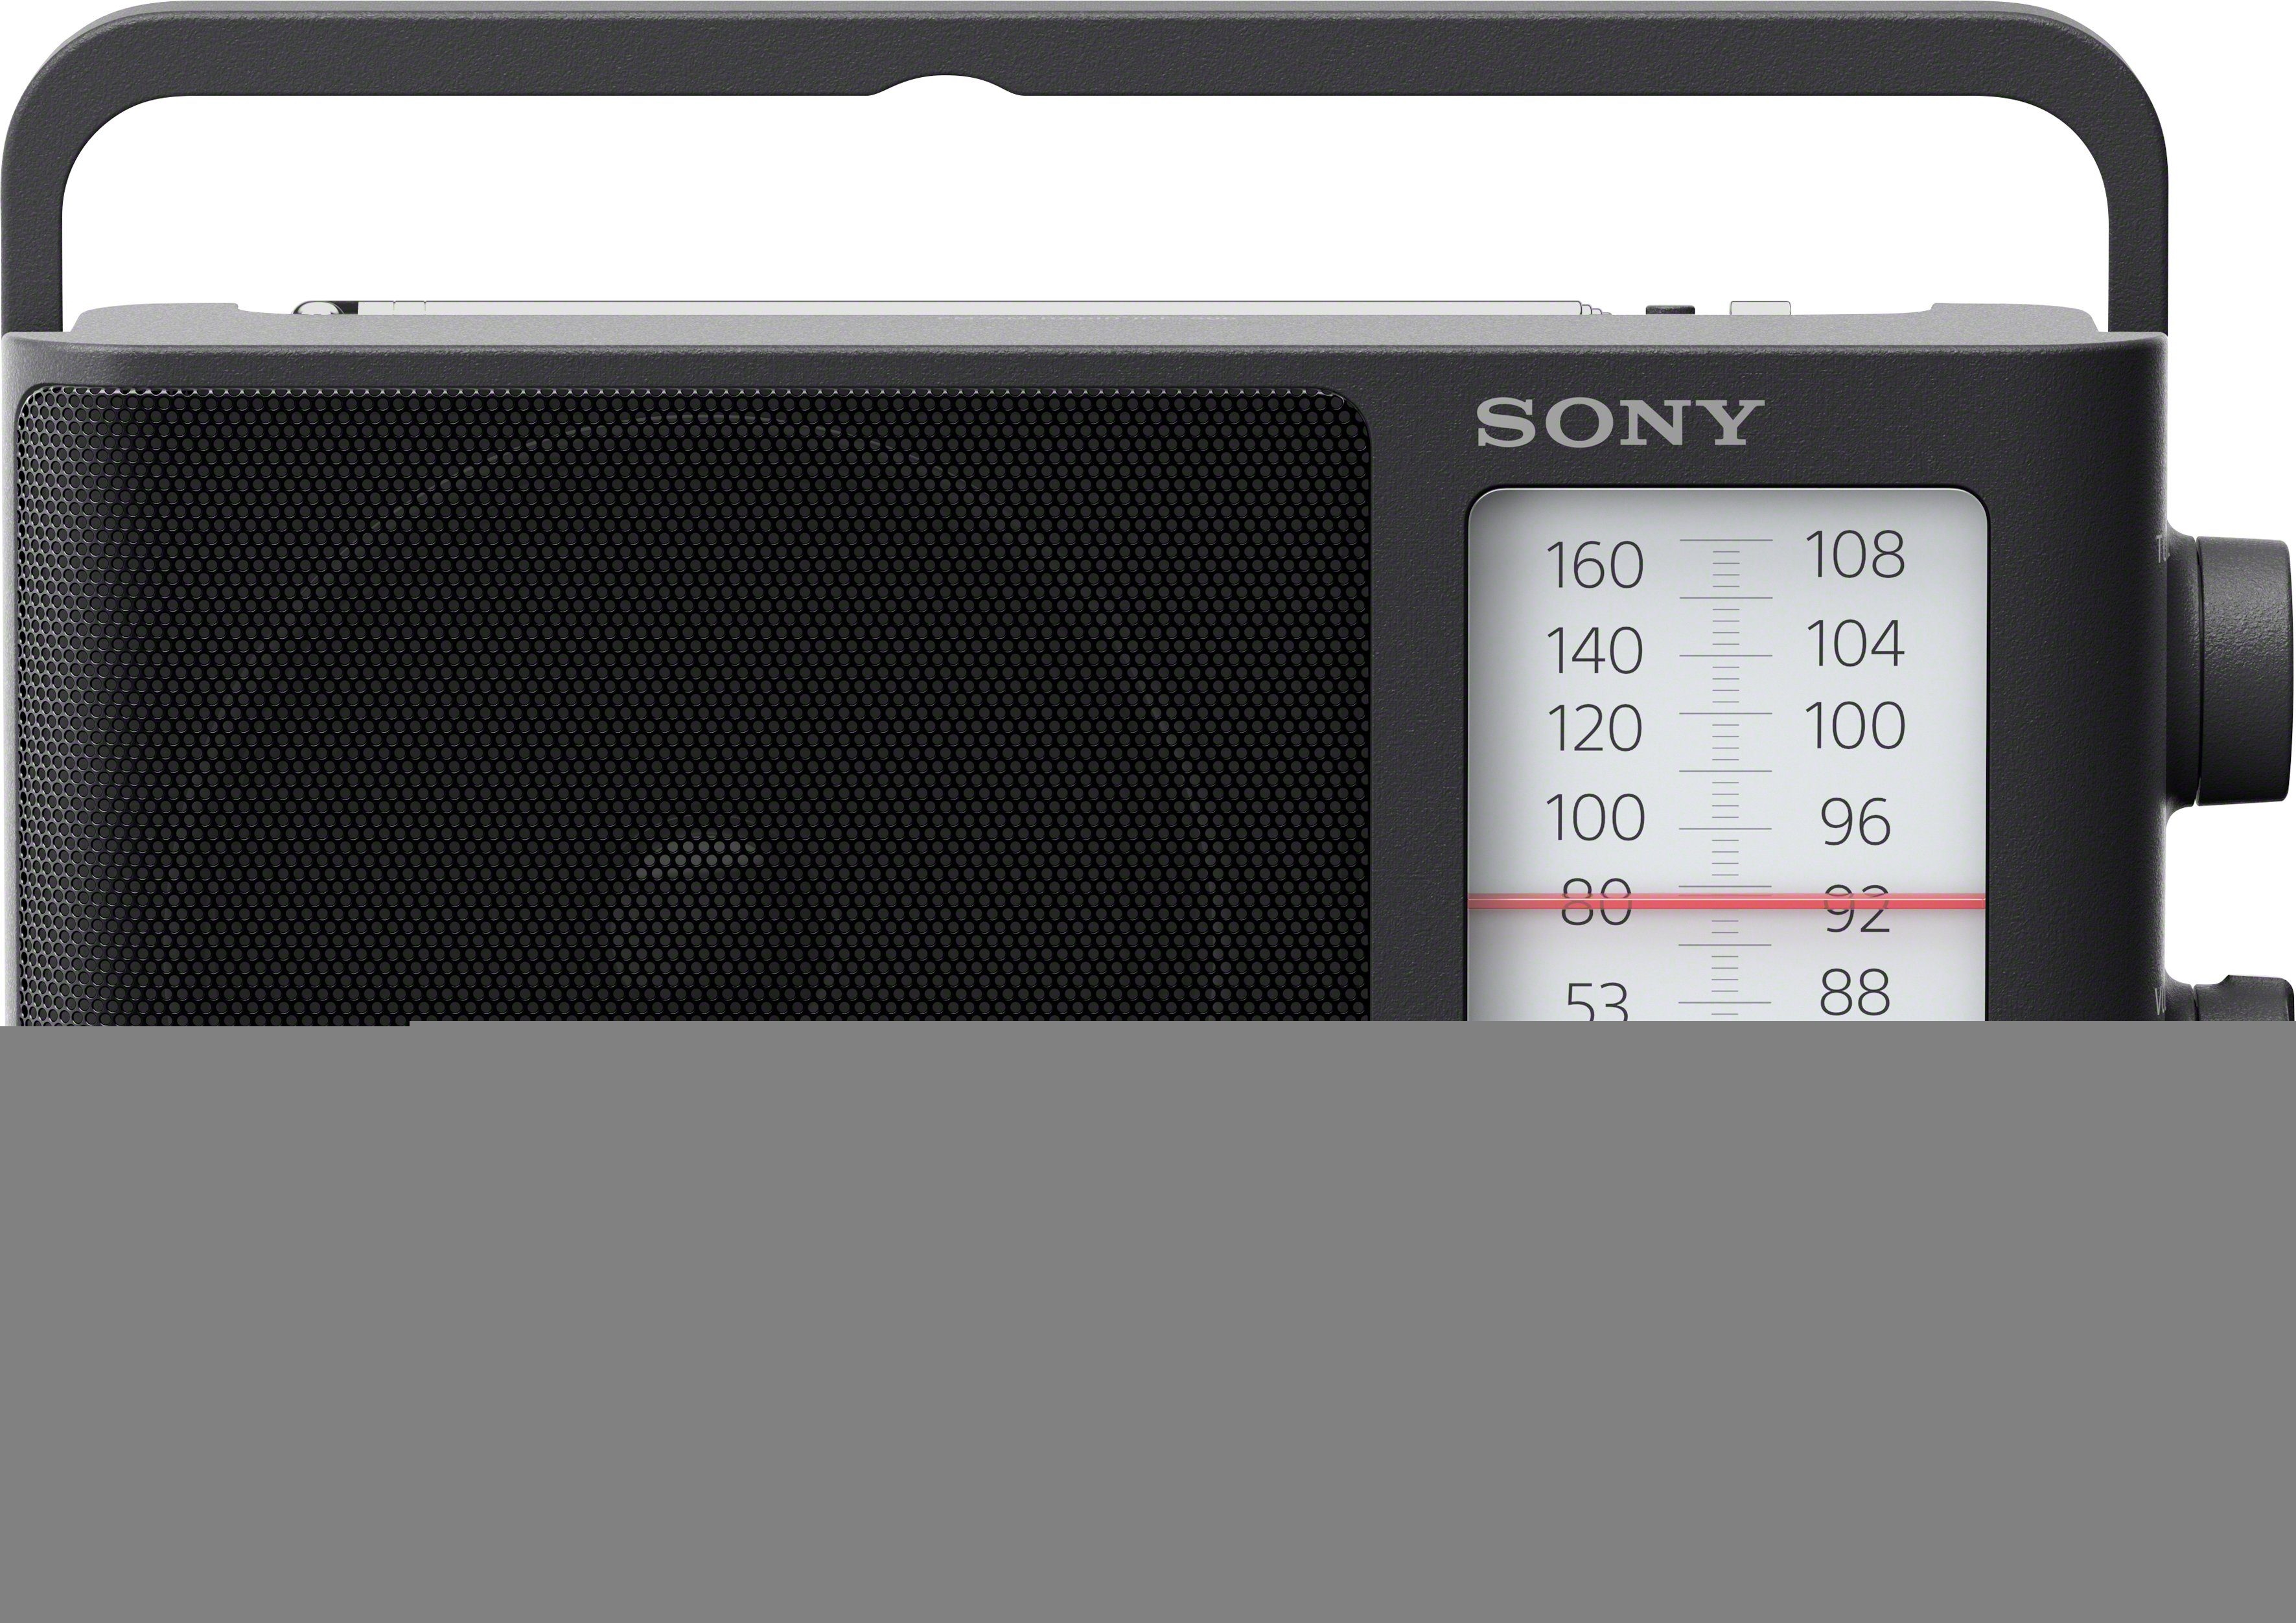 Sony 0,1 (AM-Tuner, ICF506 Radio FM-Tuner, W)